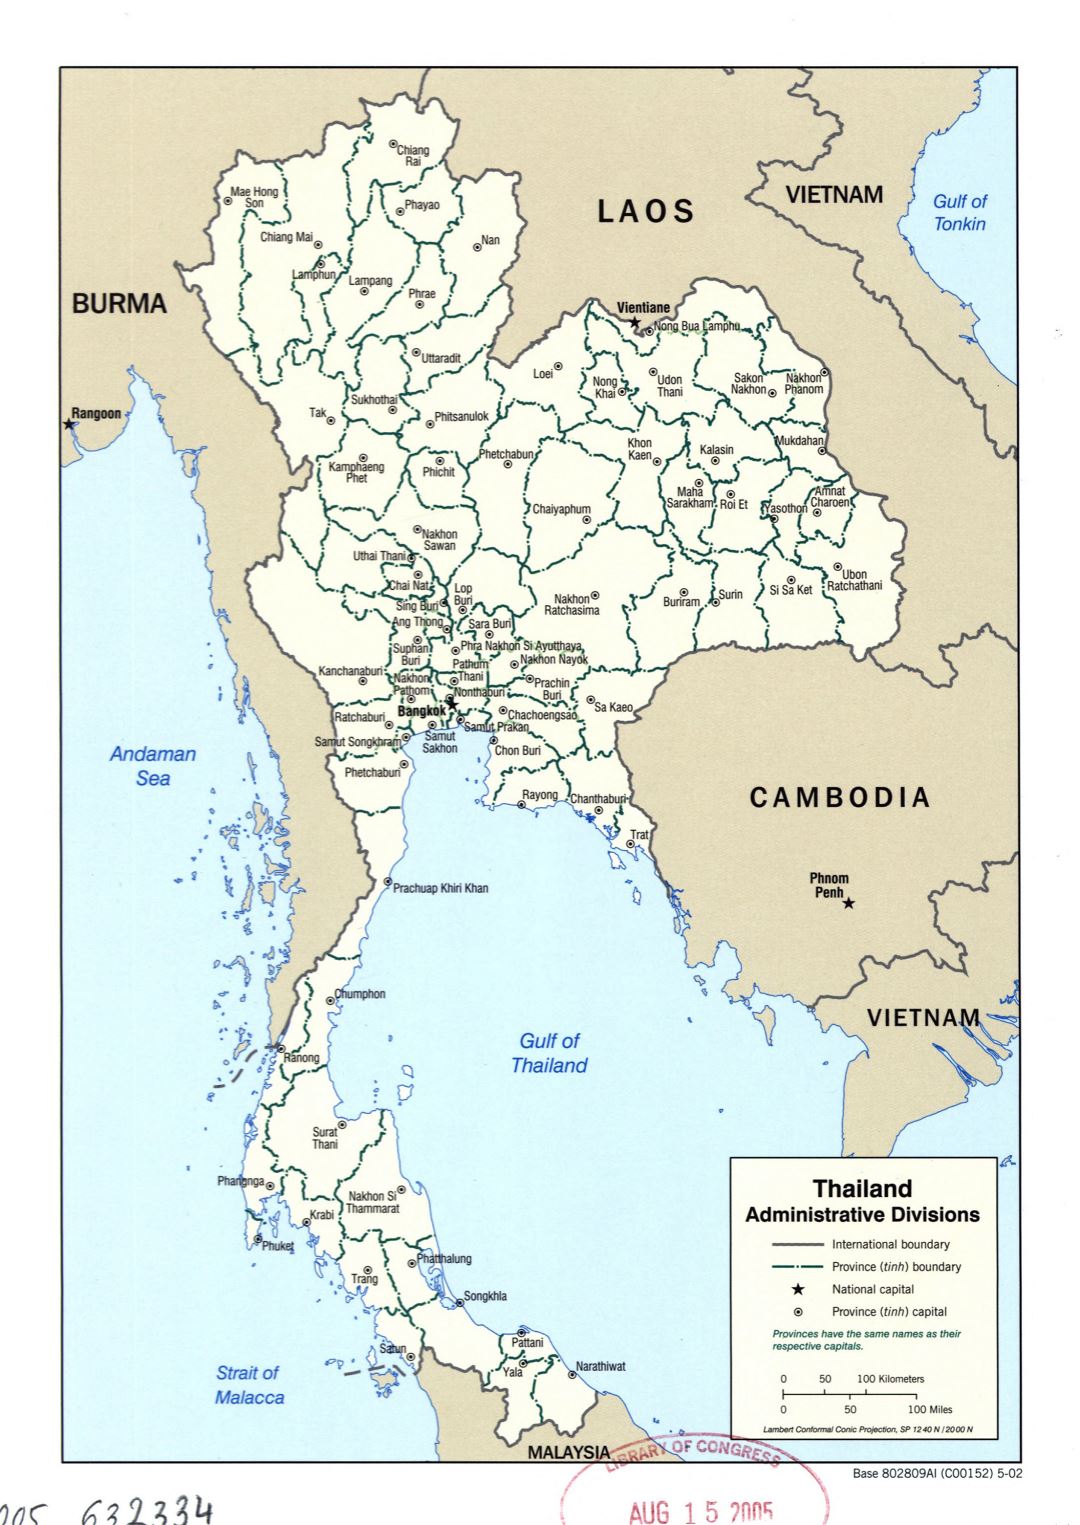 Grande detallado mapa de administrativas divisiones de Tailandia - 2002